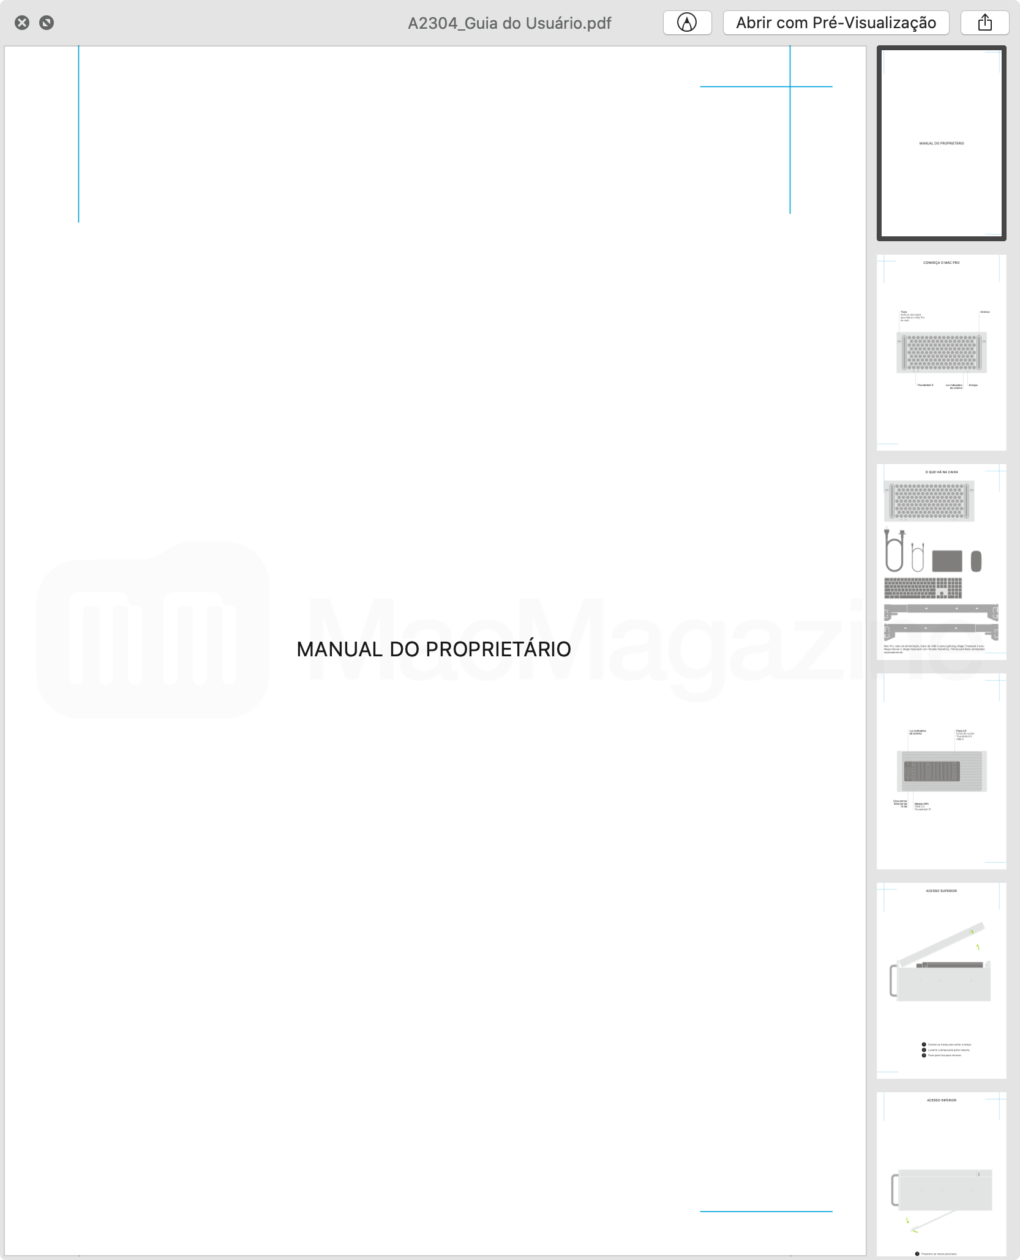 Documentos da Anatel referente a homologação da versão rack do Mac Pro